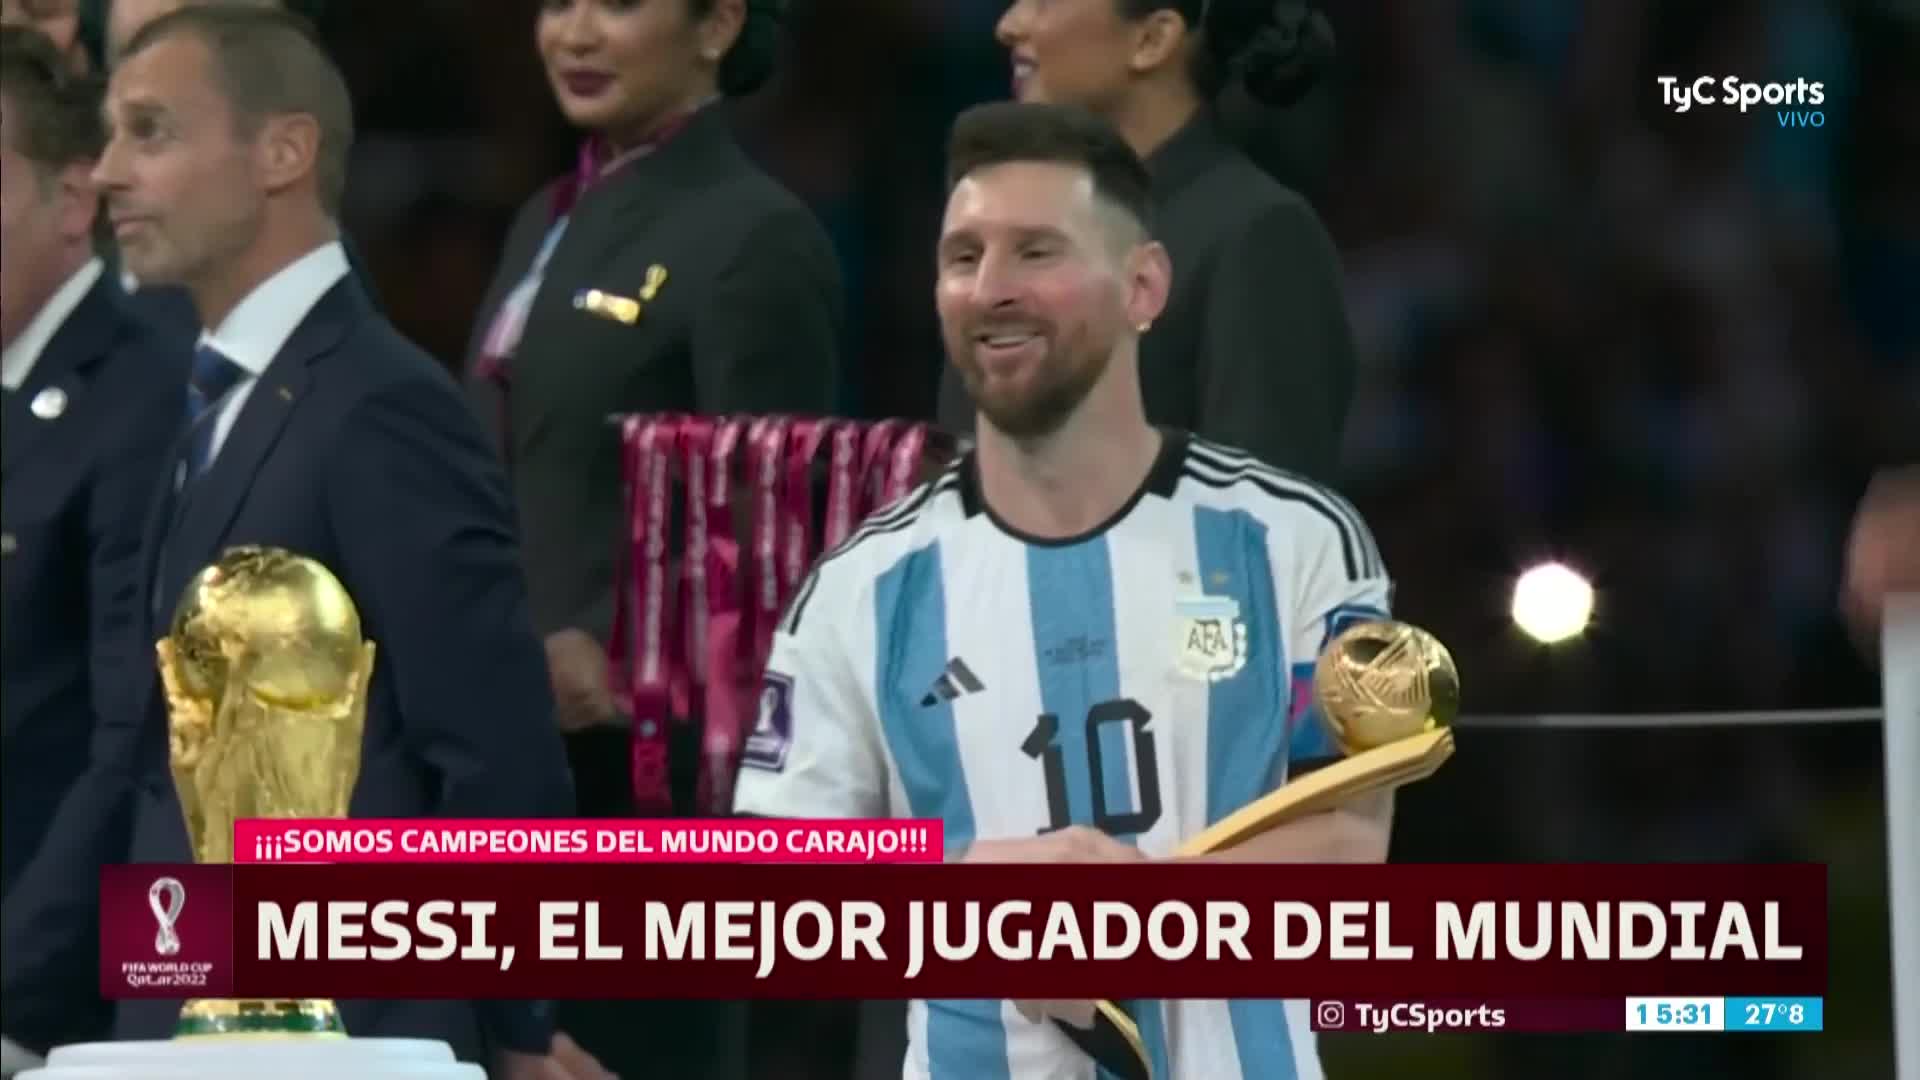 Messi, el mejor jugador besó la Copa del Mundo